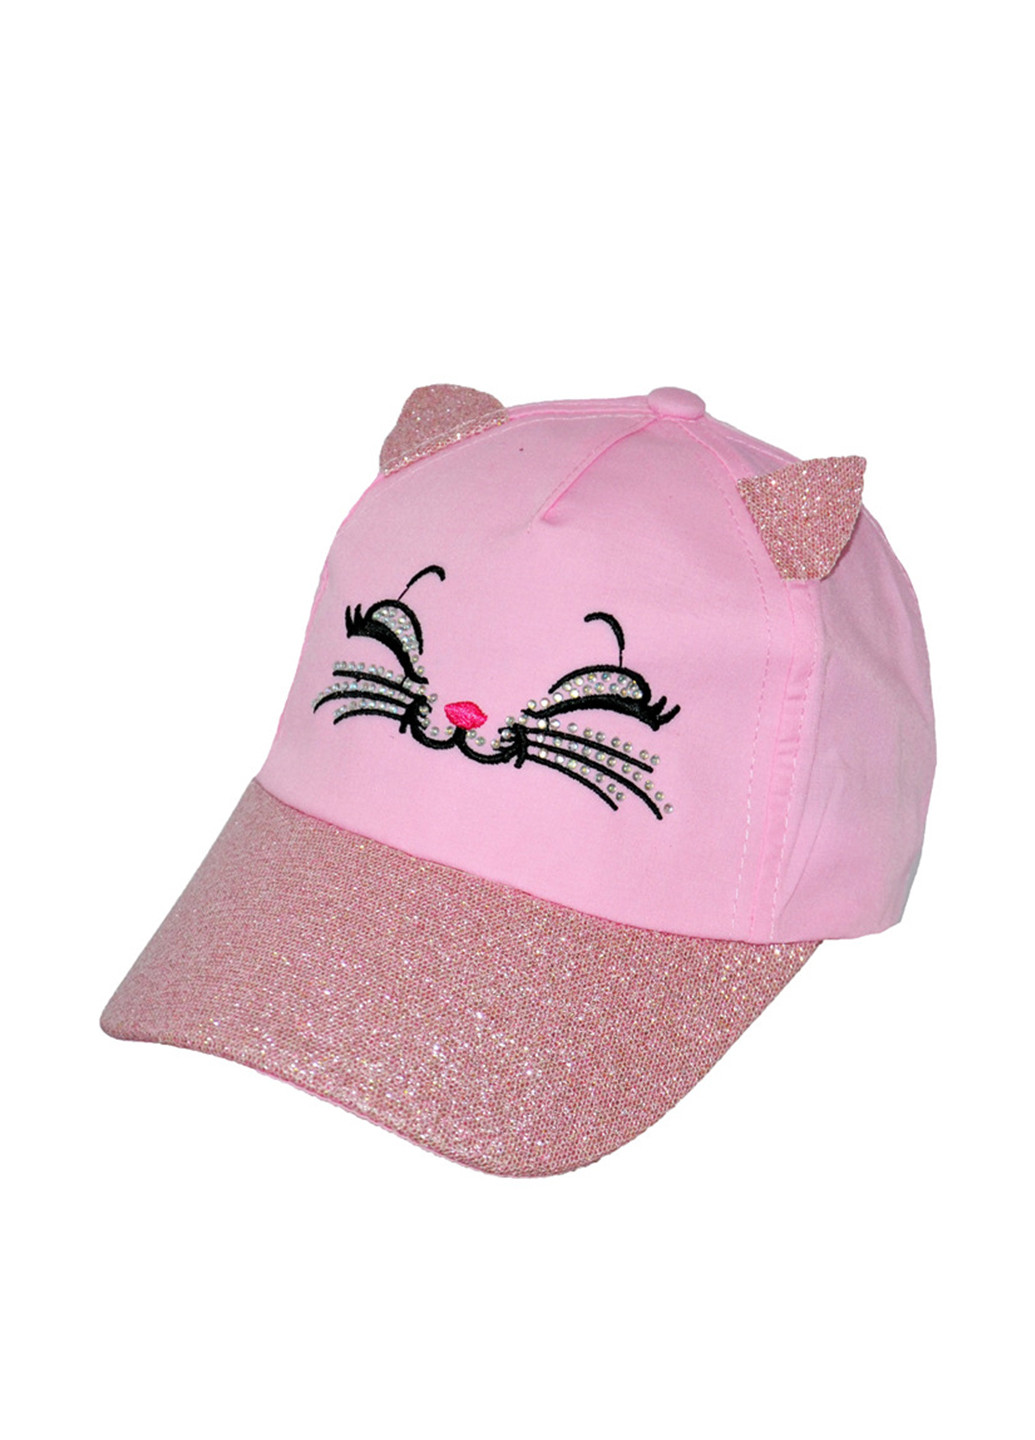 Кепка Sweet Hats кошки розовая кэжуал